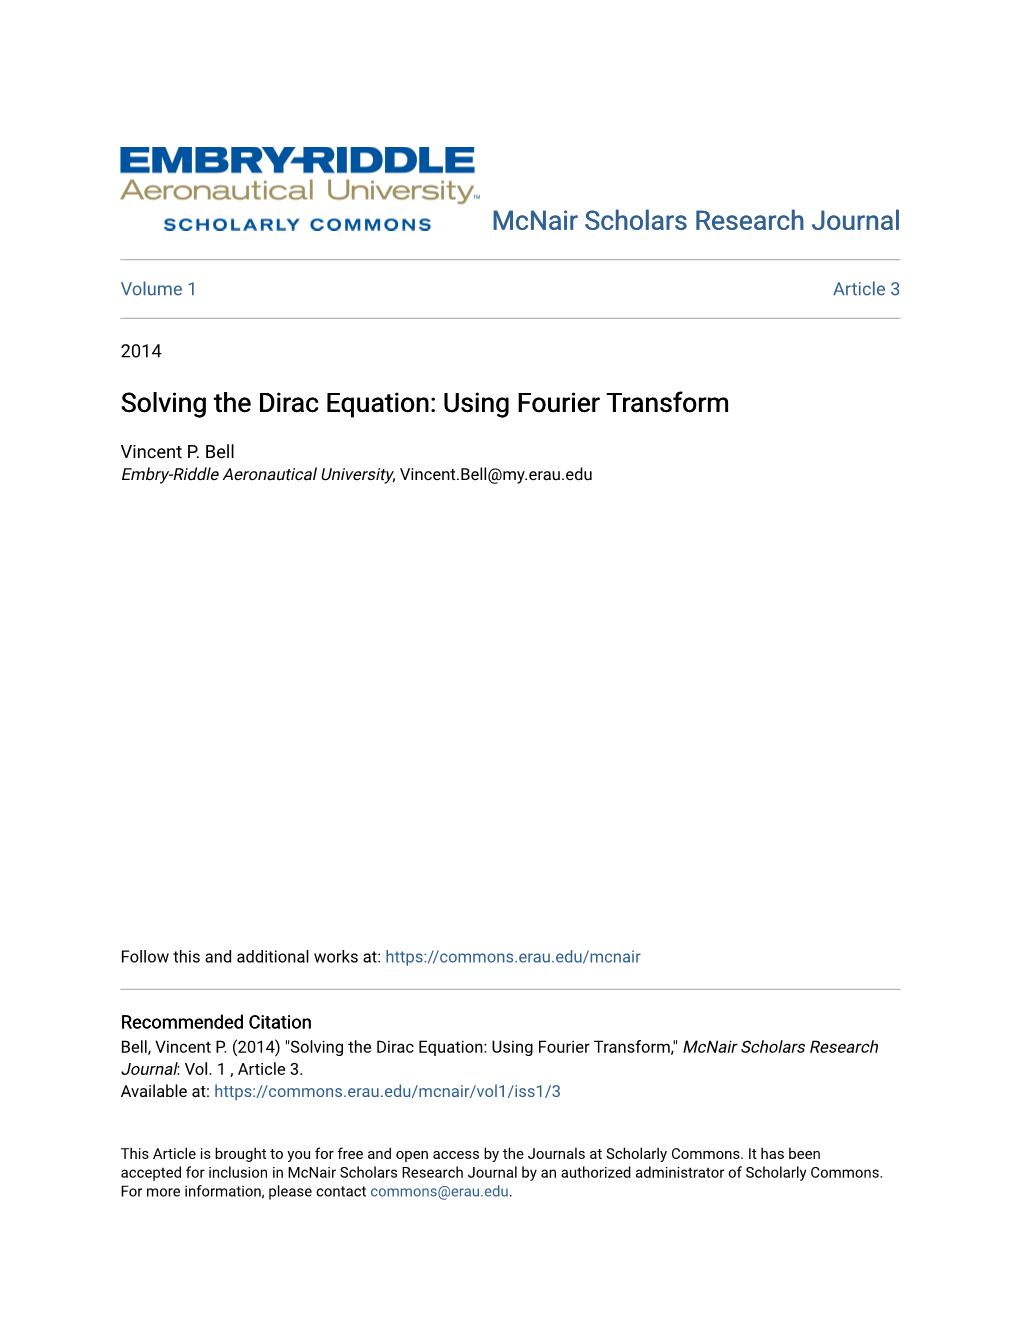 Solving the Dirac Equation: Using Fourier Transform